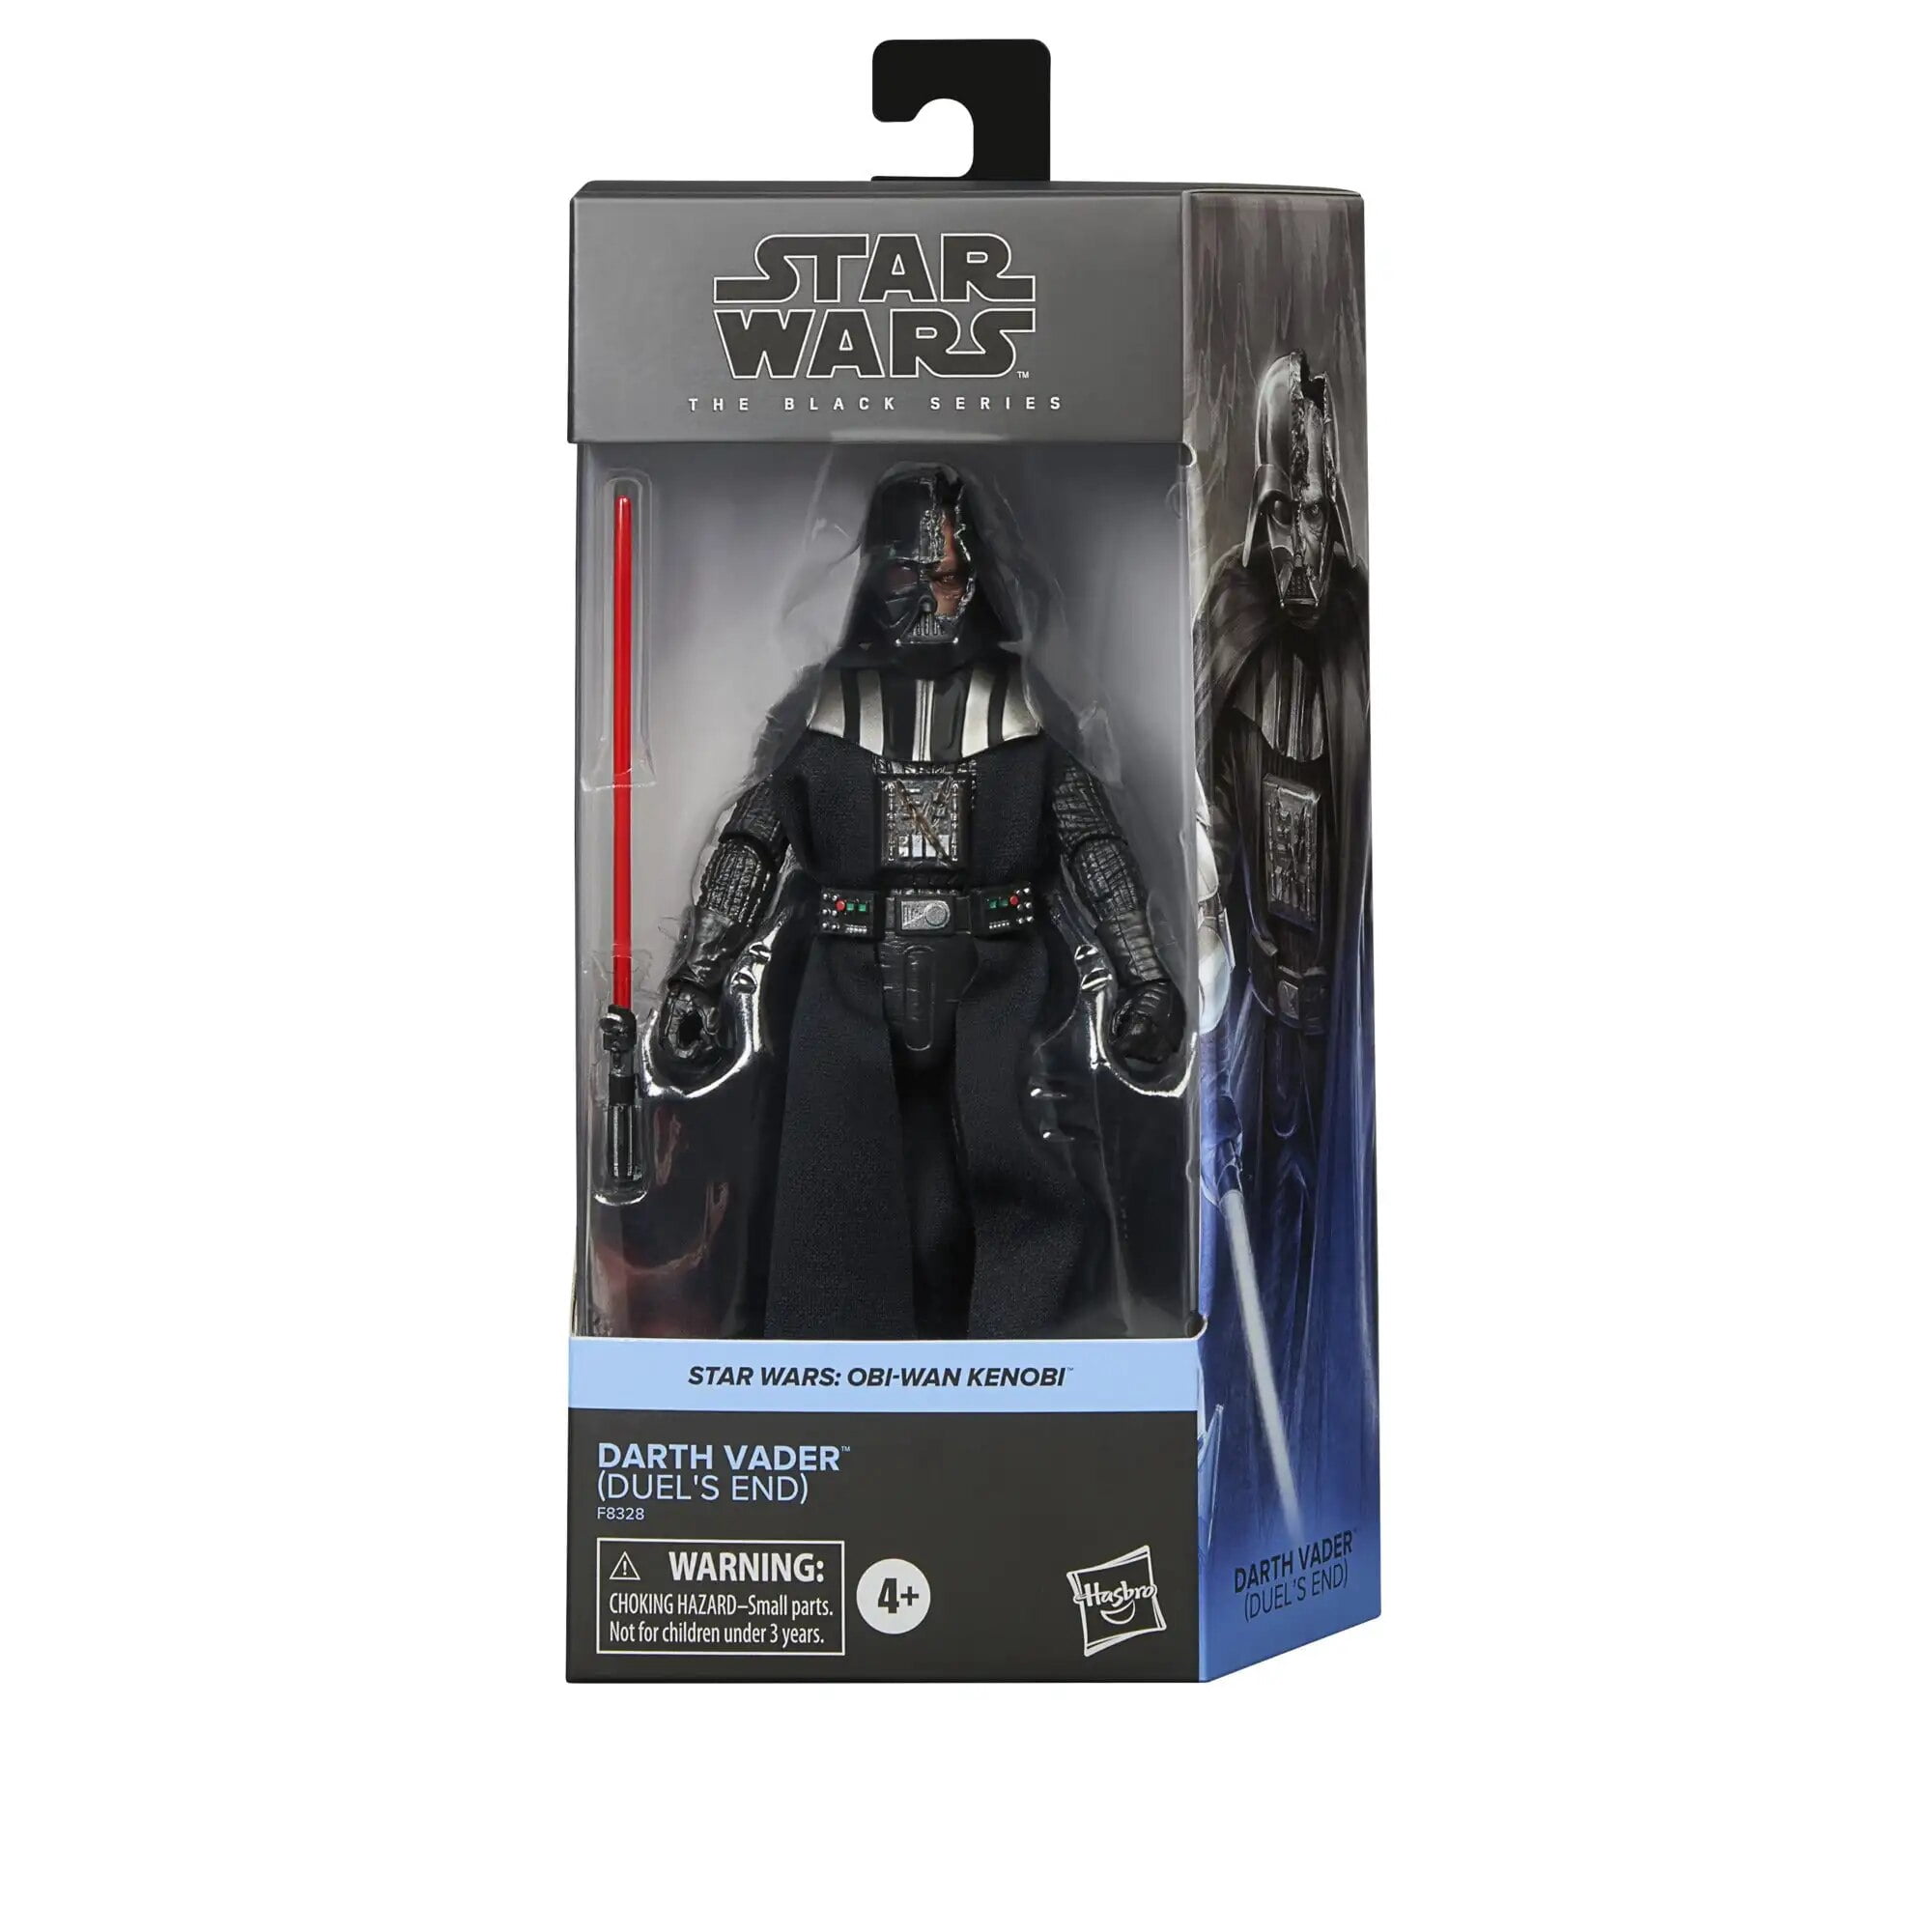 Hasbro Star Wars la serie negra Darth Vader (DuelS End) figuras de acción de  6 pulgadas modelo de juguete regalo coleccionables nuevo Original F8328